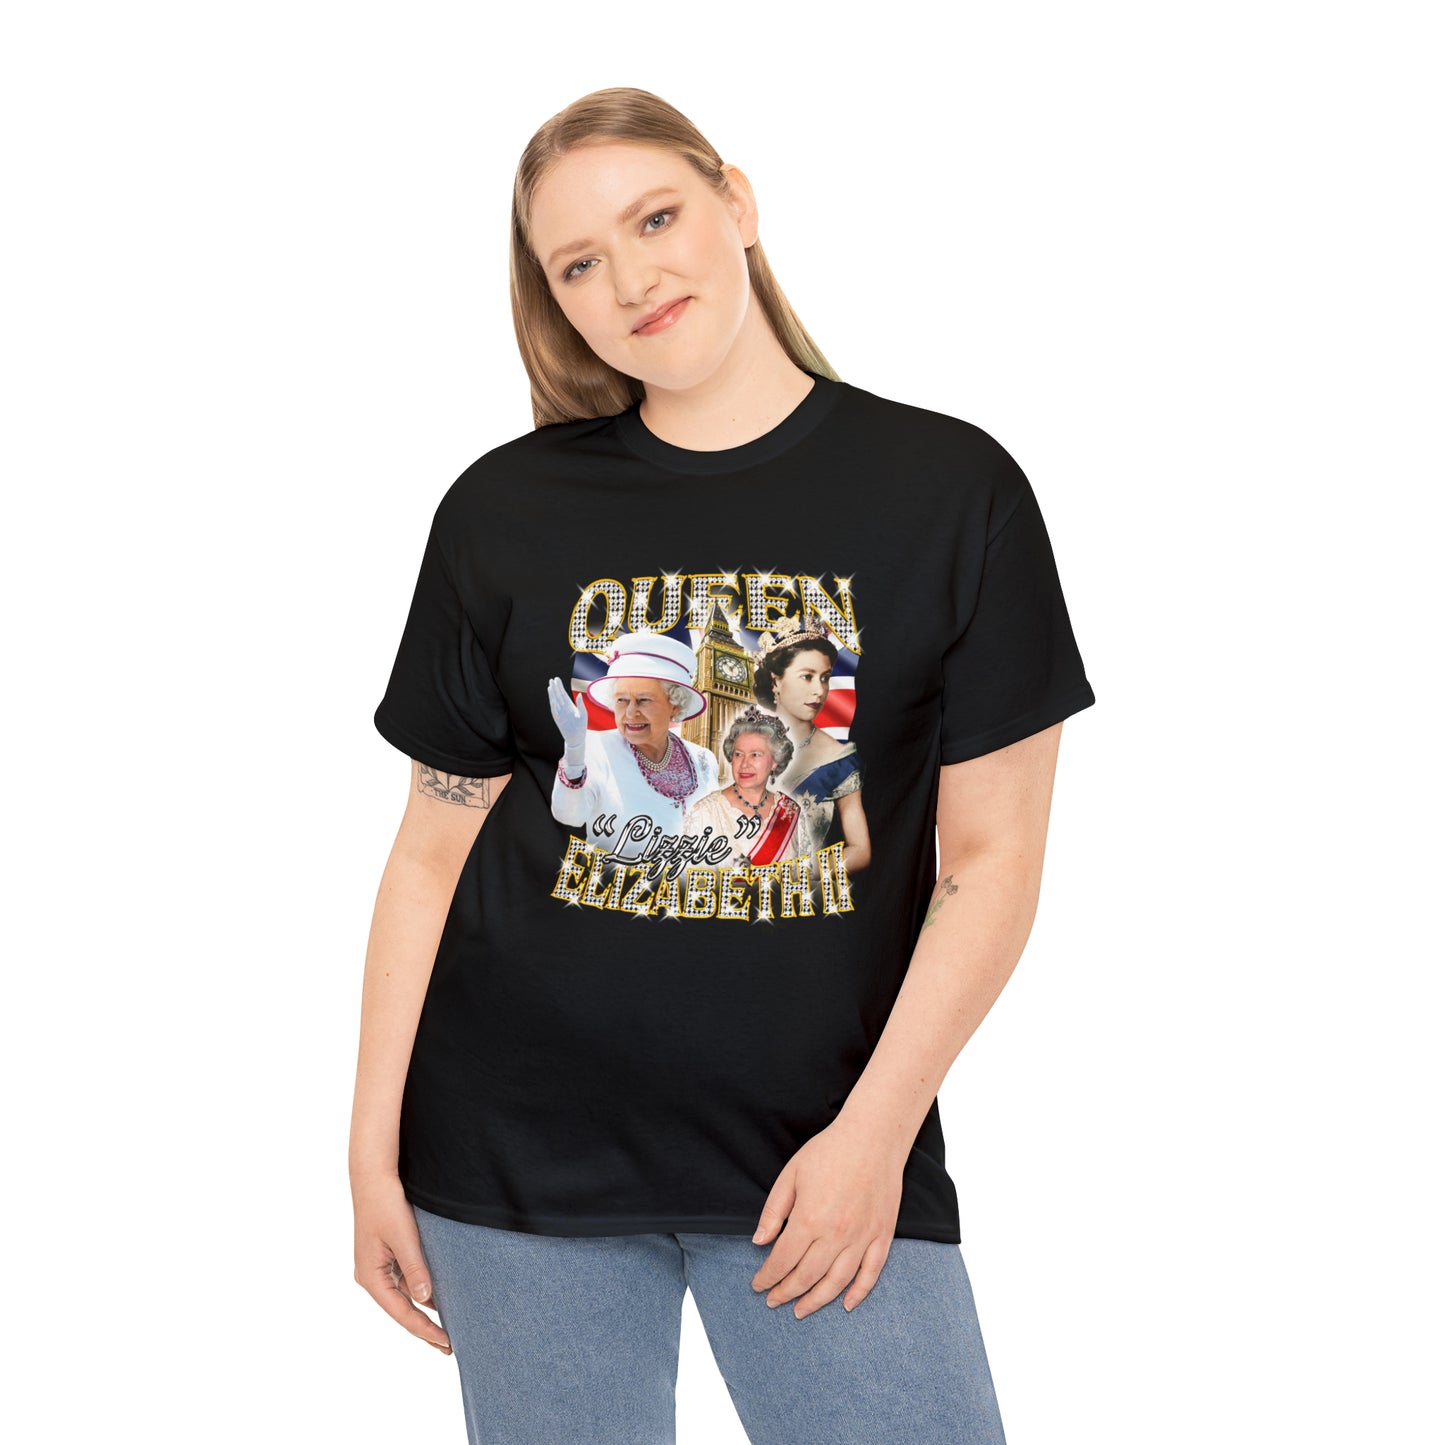 Queen "Lizzie" Elizabeth II T-Shirt!